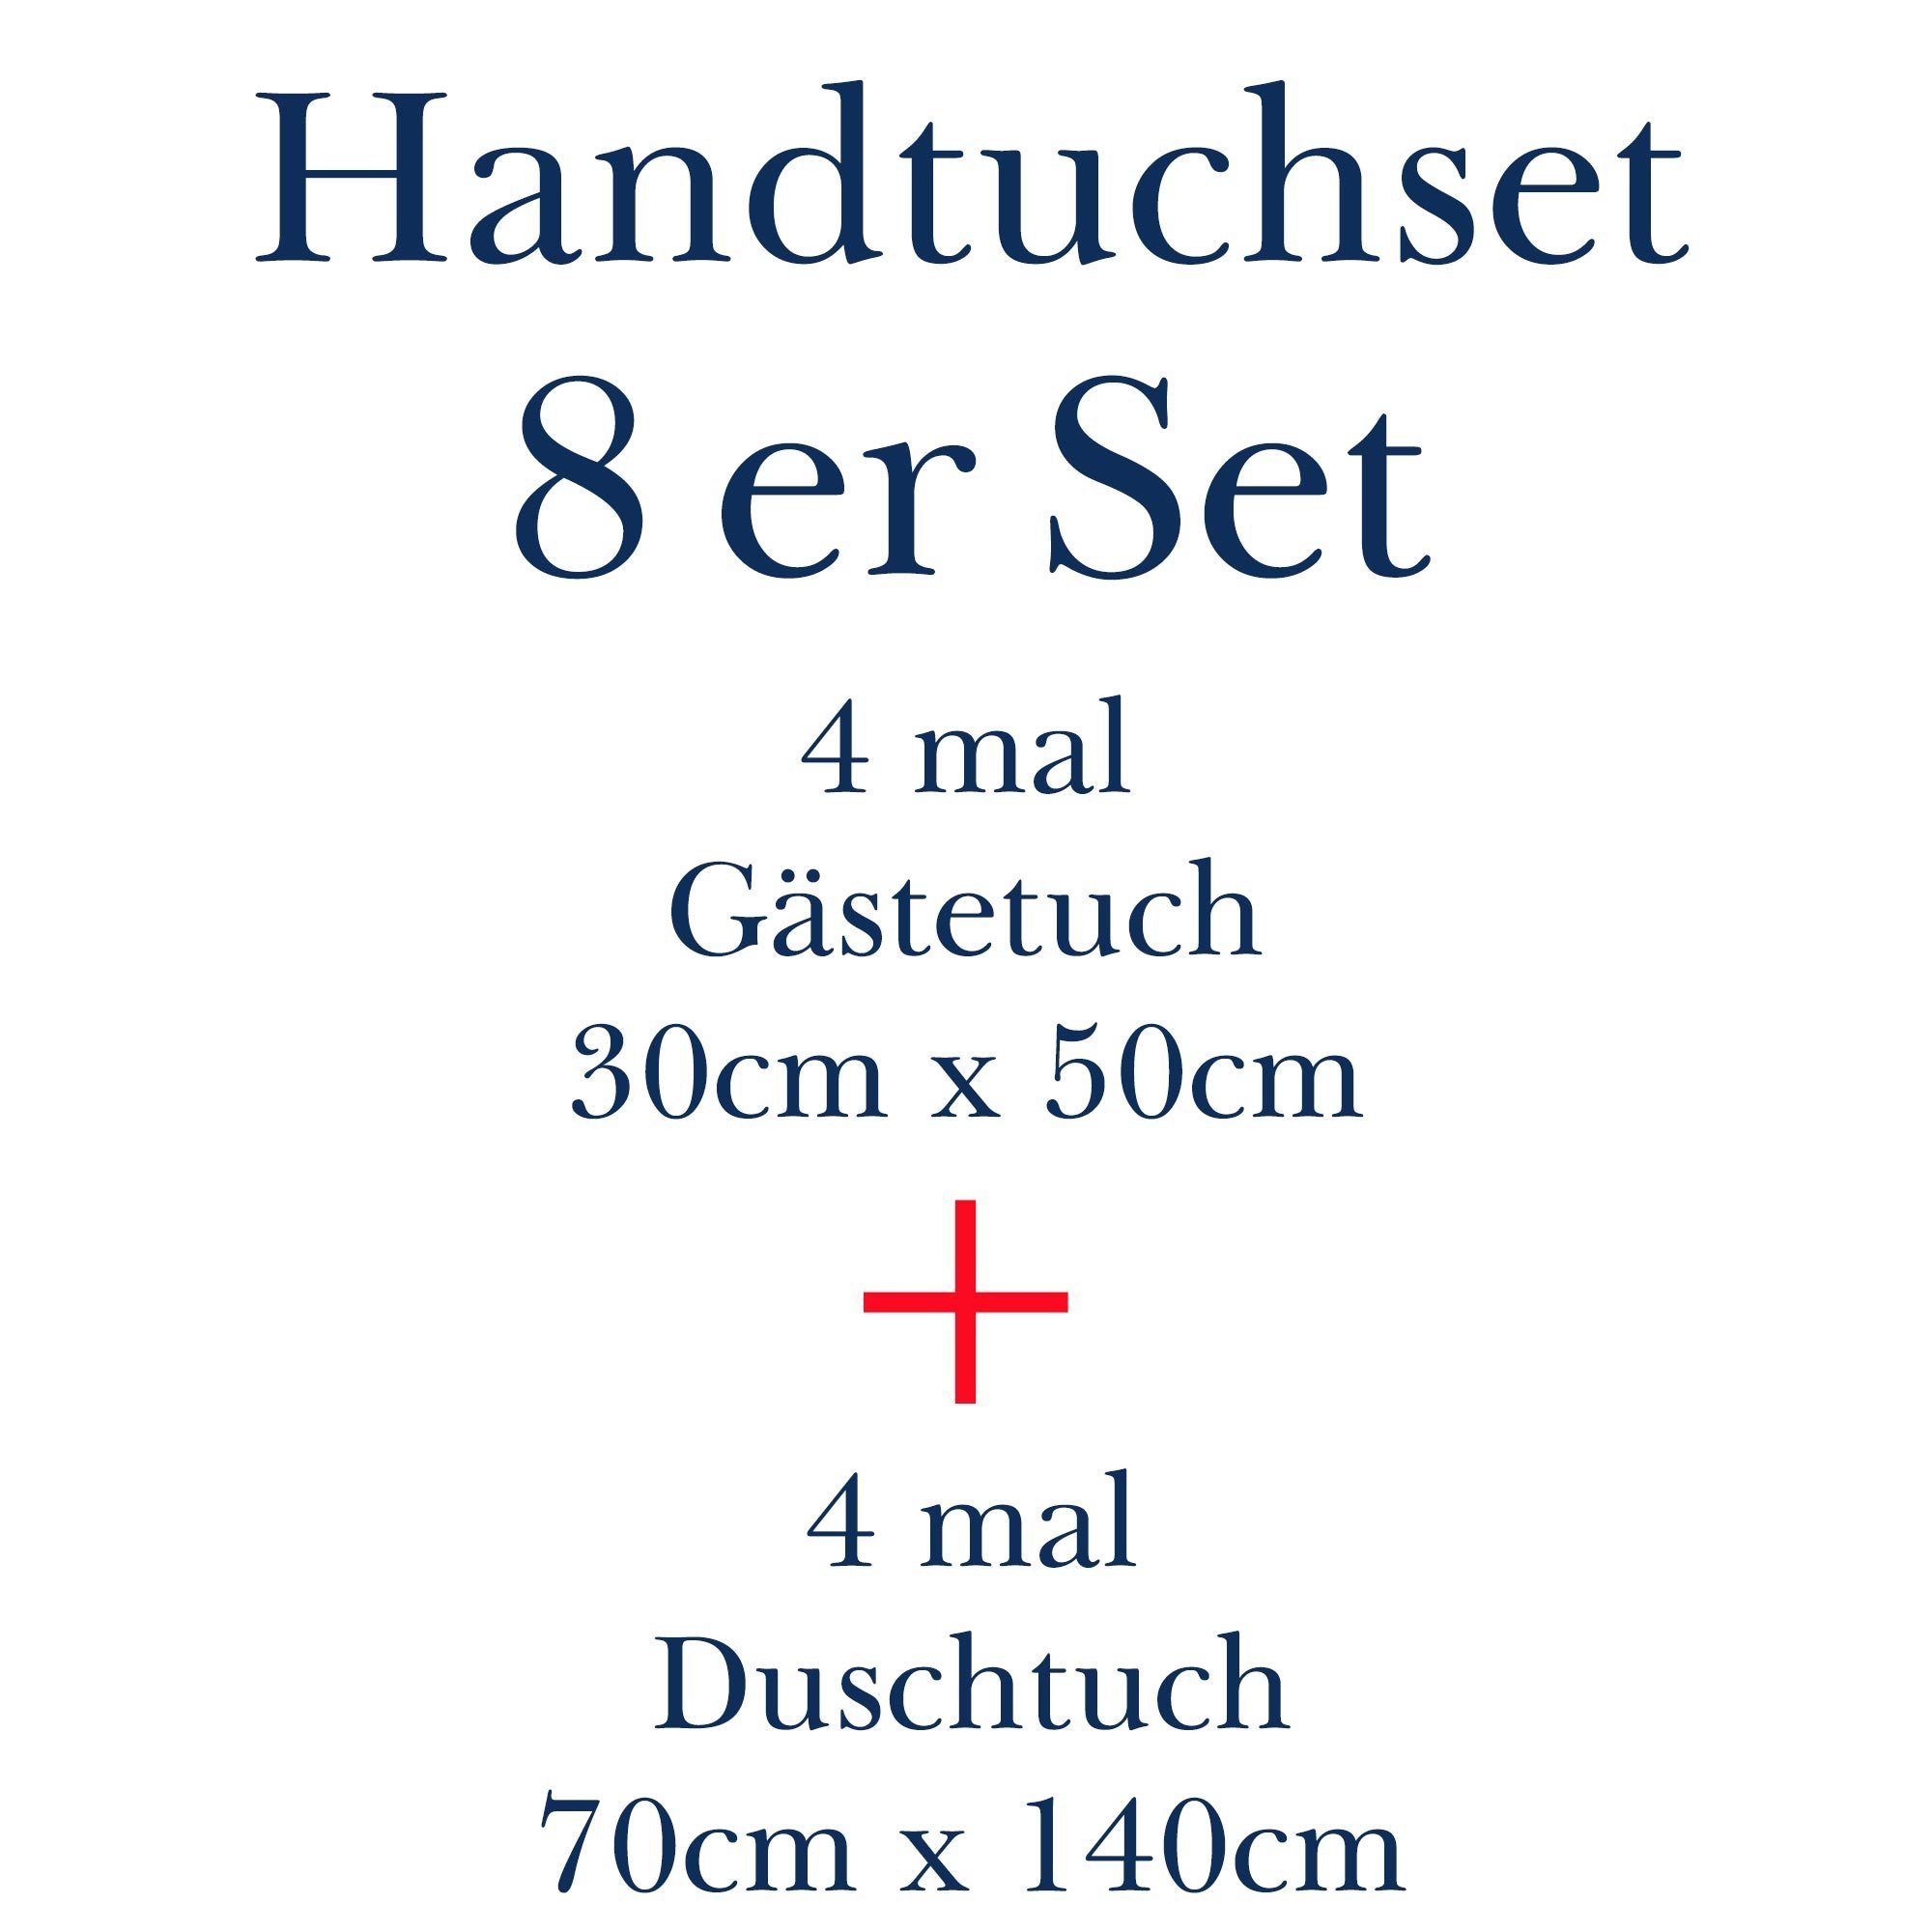 Baumwolle Handtücher, Mixibaby 100%_Baumwolle, Grau